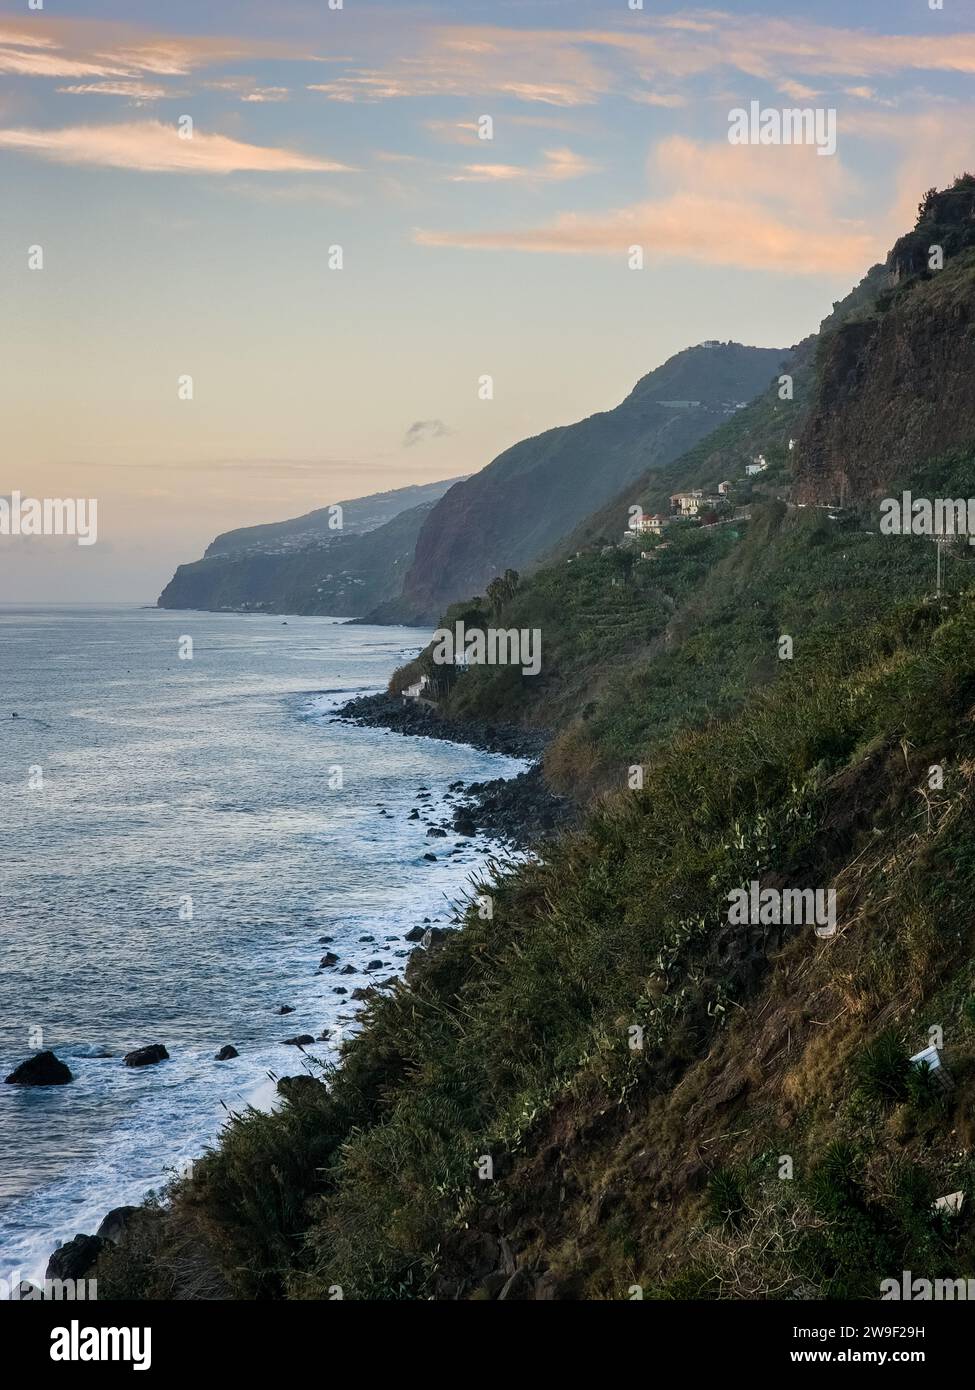 Ein reifer Erwachsener steht allein auf einem felsigen Berghang mit Blick auf den ruhigen Ozean Stockfoto